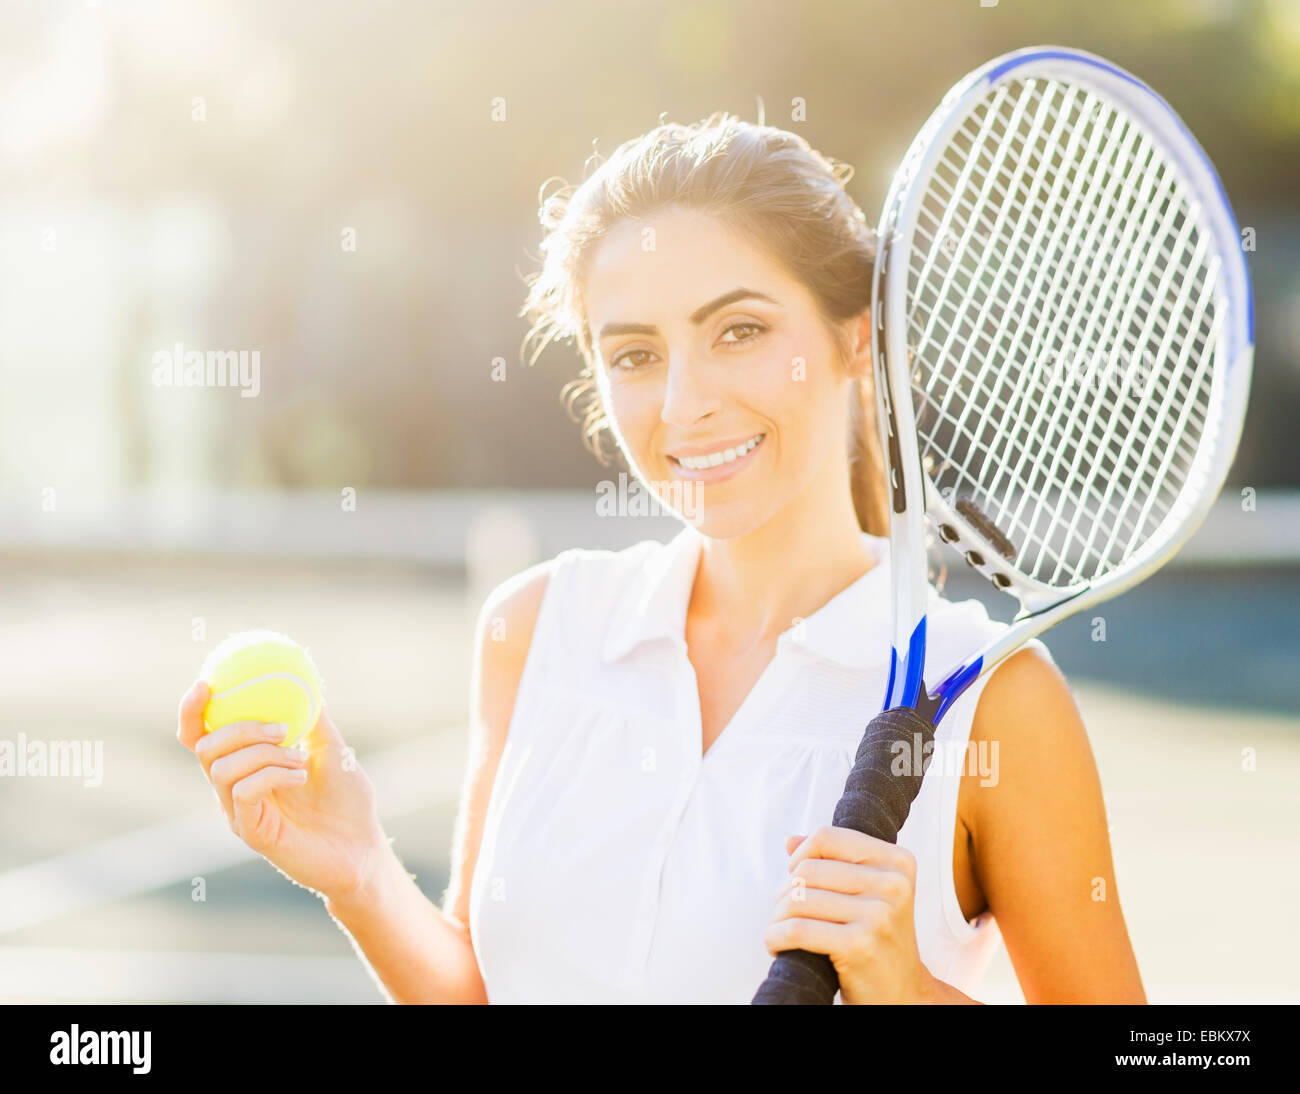 Retrato de mujer joven sosteniendo pelota de tenis y raqueta de tenis Foto de stock